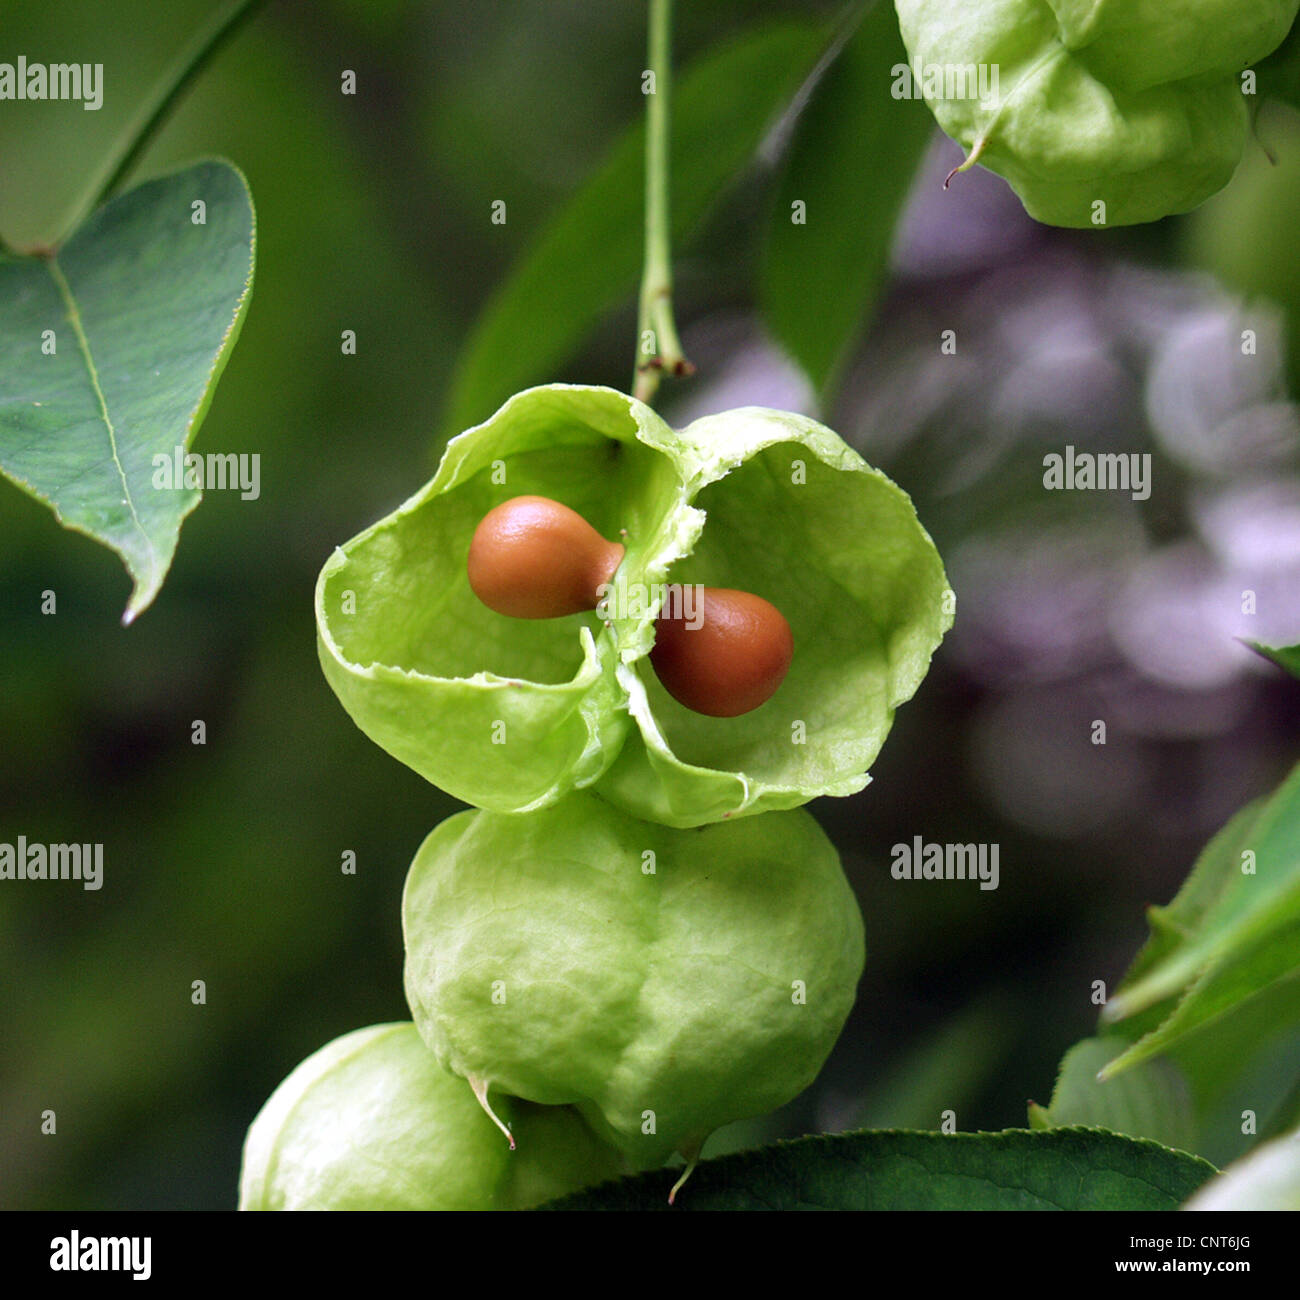 Bladdernut, European Bladdernut (Staphylea pinnata), opened fruit Stock Photo